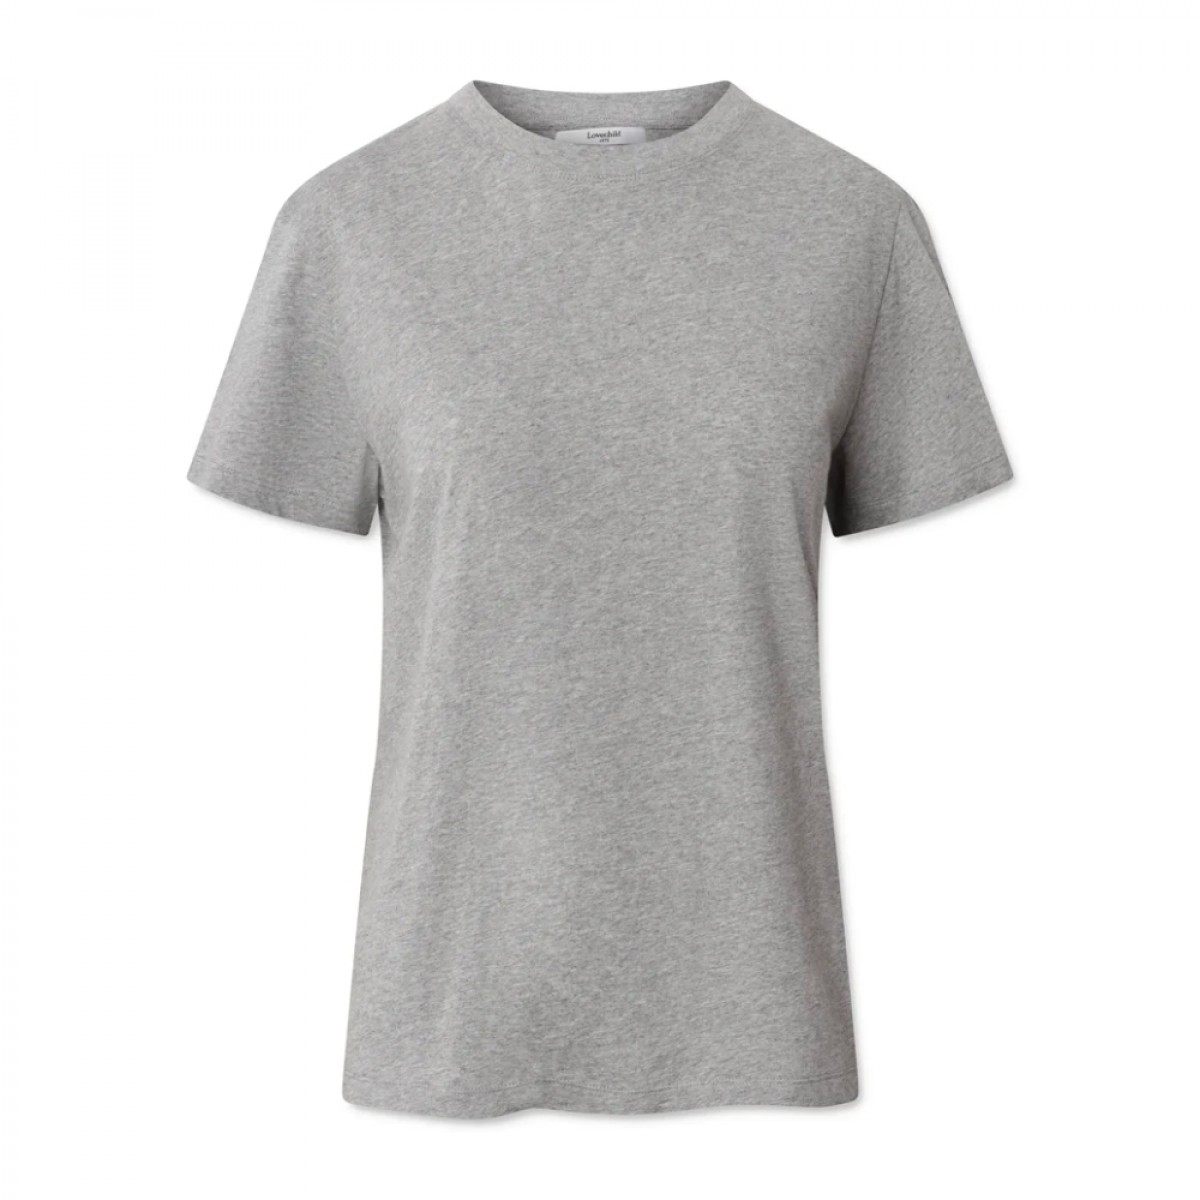 donna t-shirt - grey melange